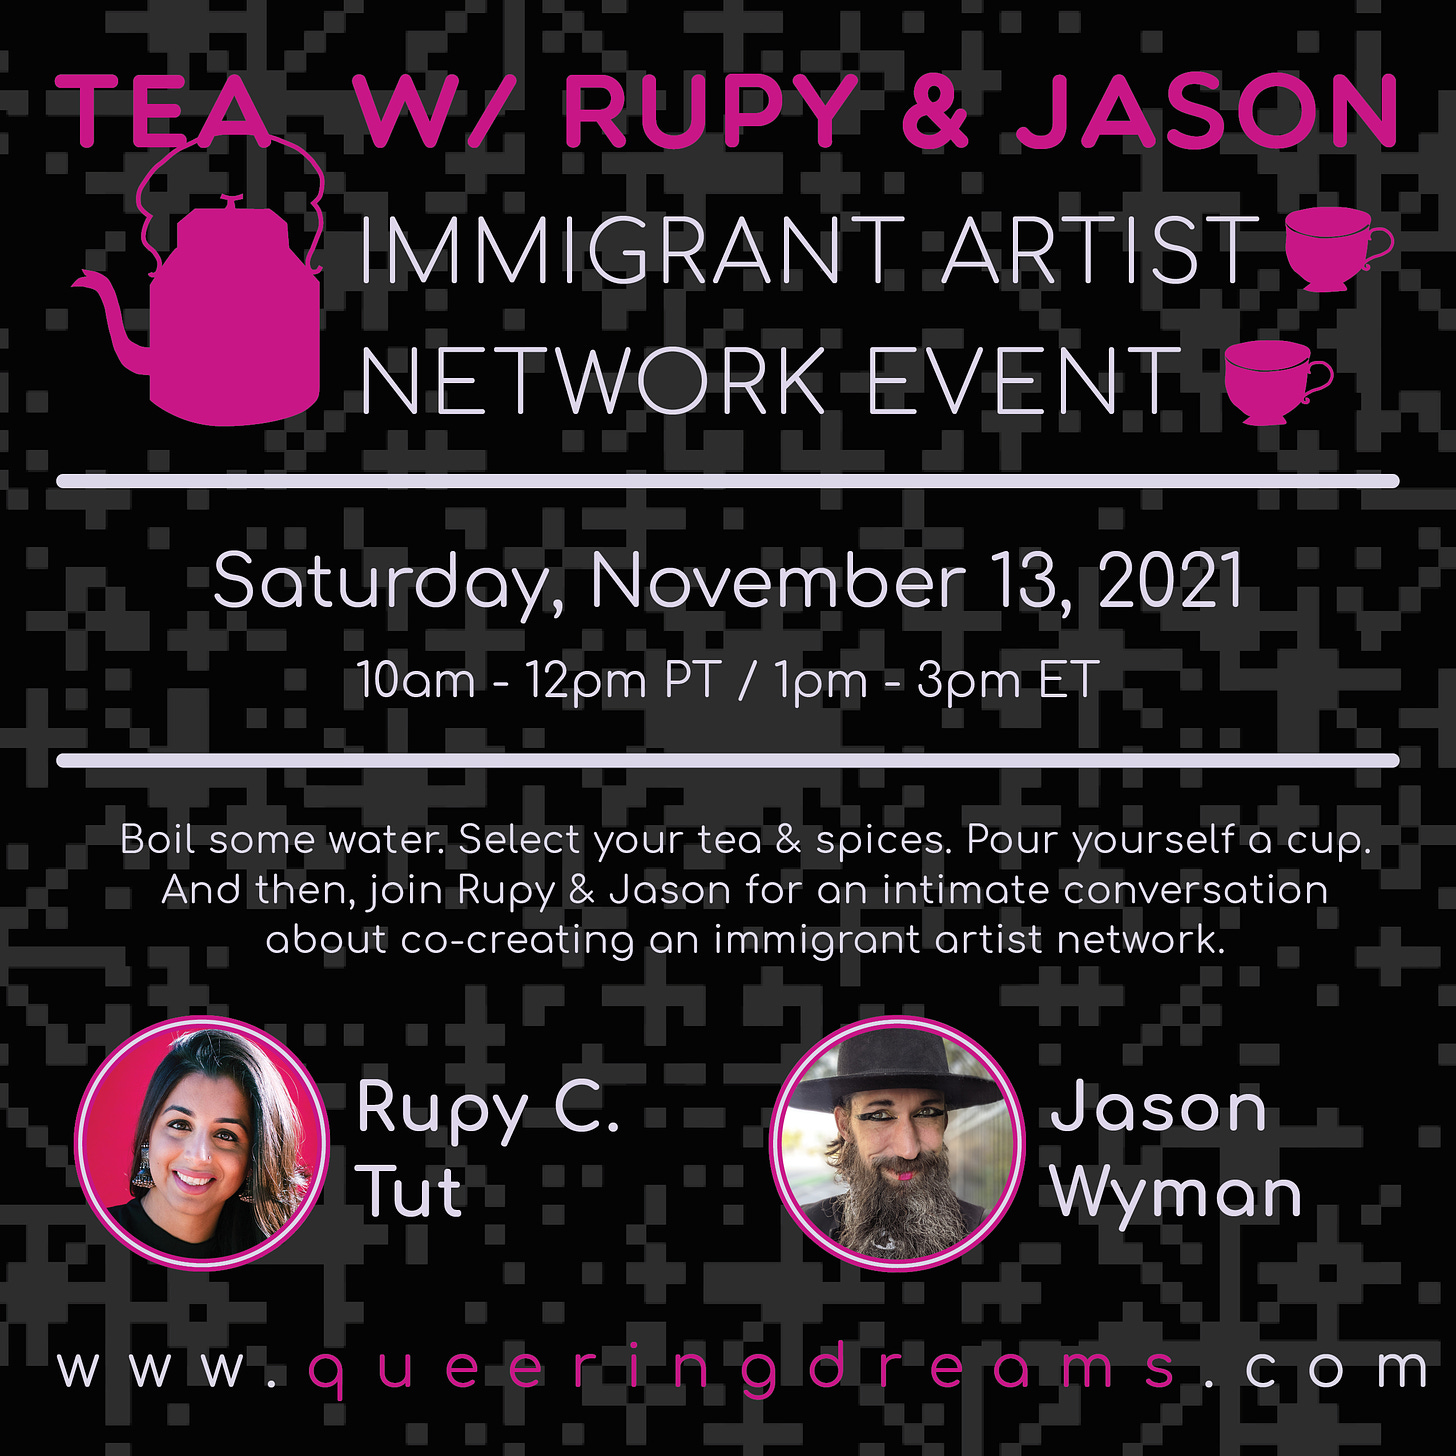 A digital flyer for Tea with Rupy & Jason